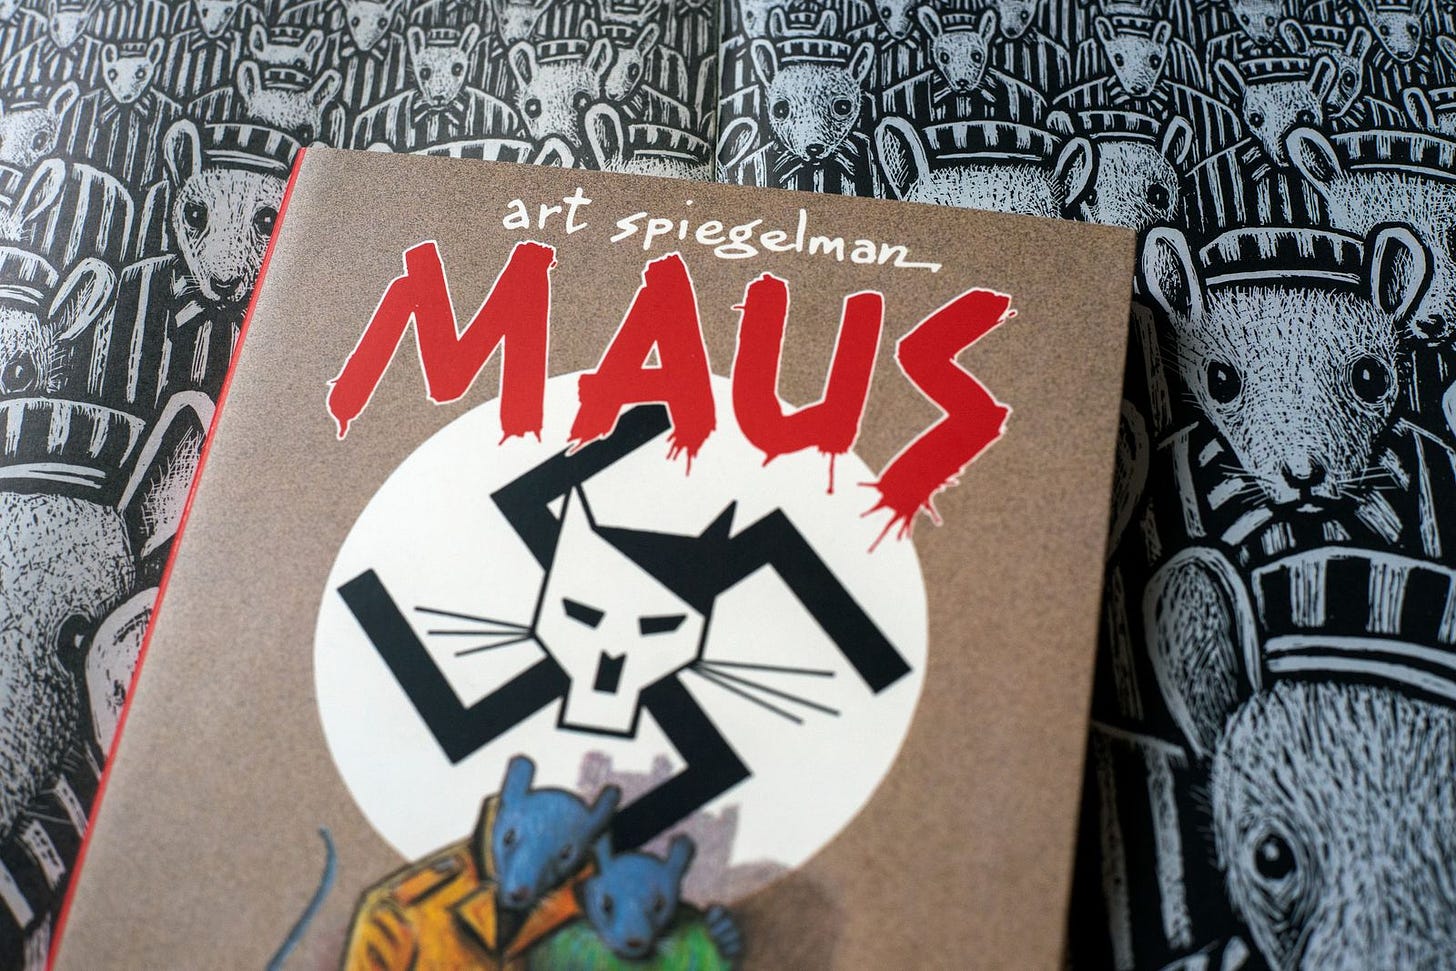 Art Spiegelman on the School Ban of His Book »Maus« - DER SPIEGEL